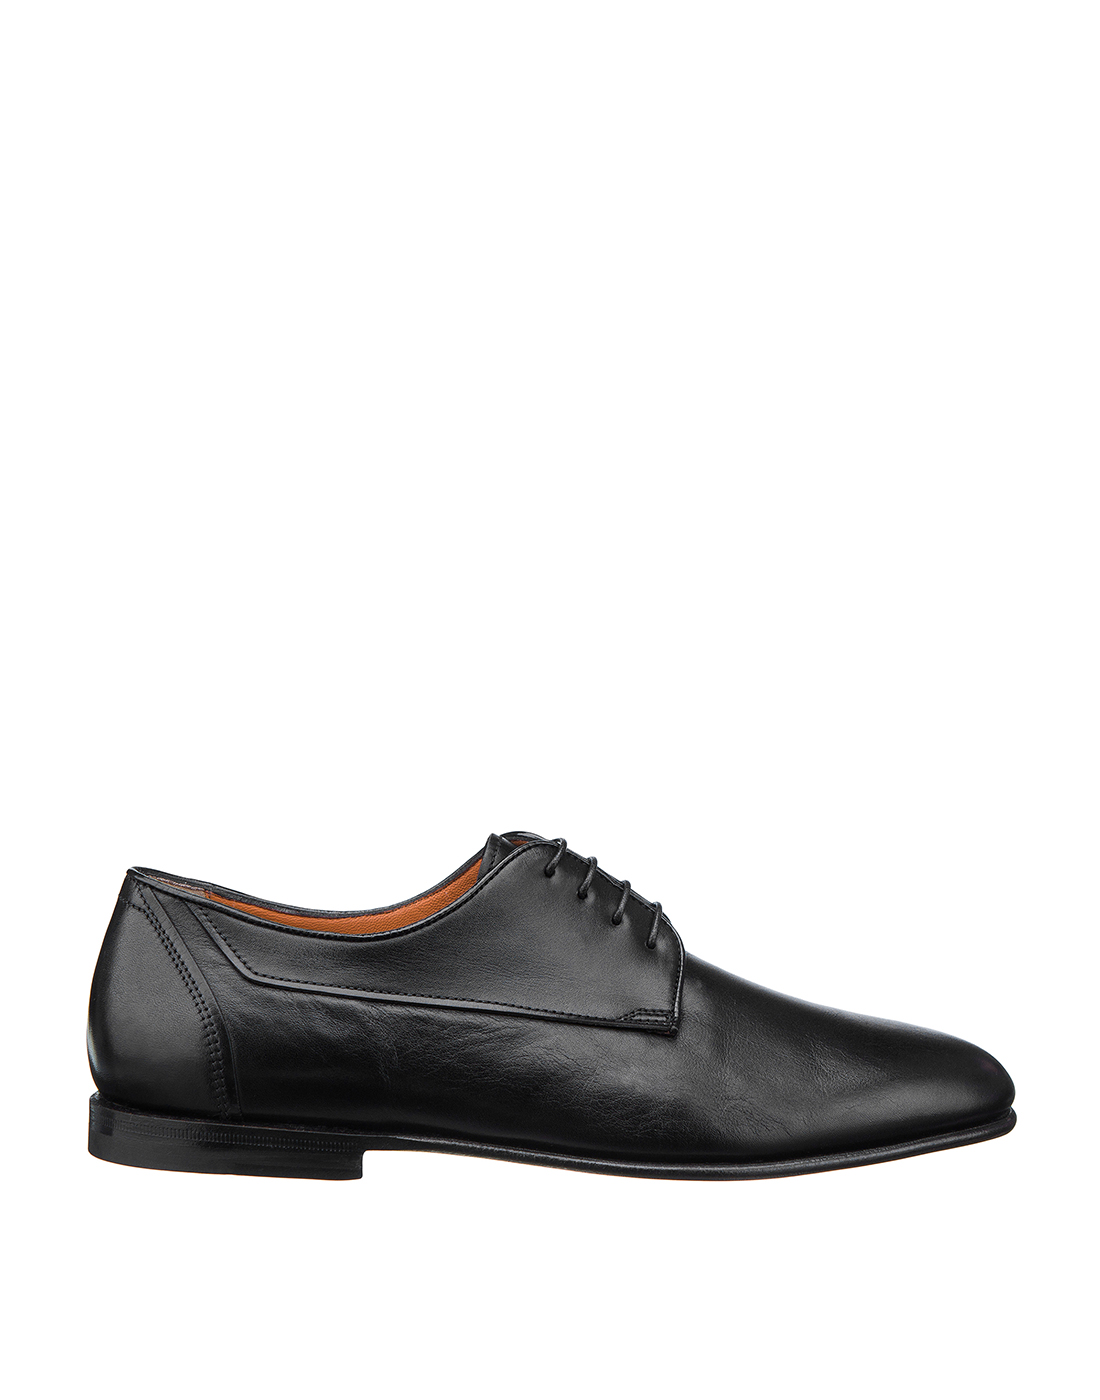 Туфли черные мужские Santoni S16438-01-1